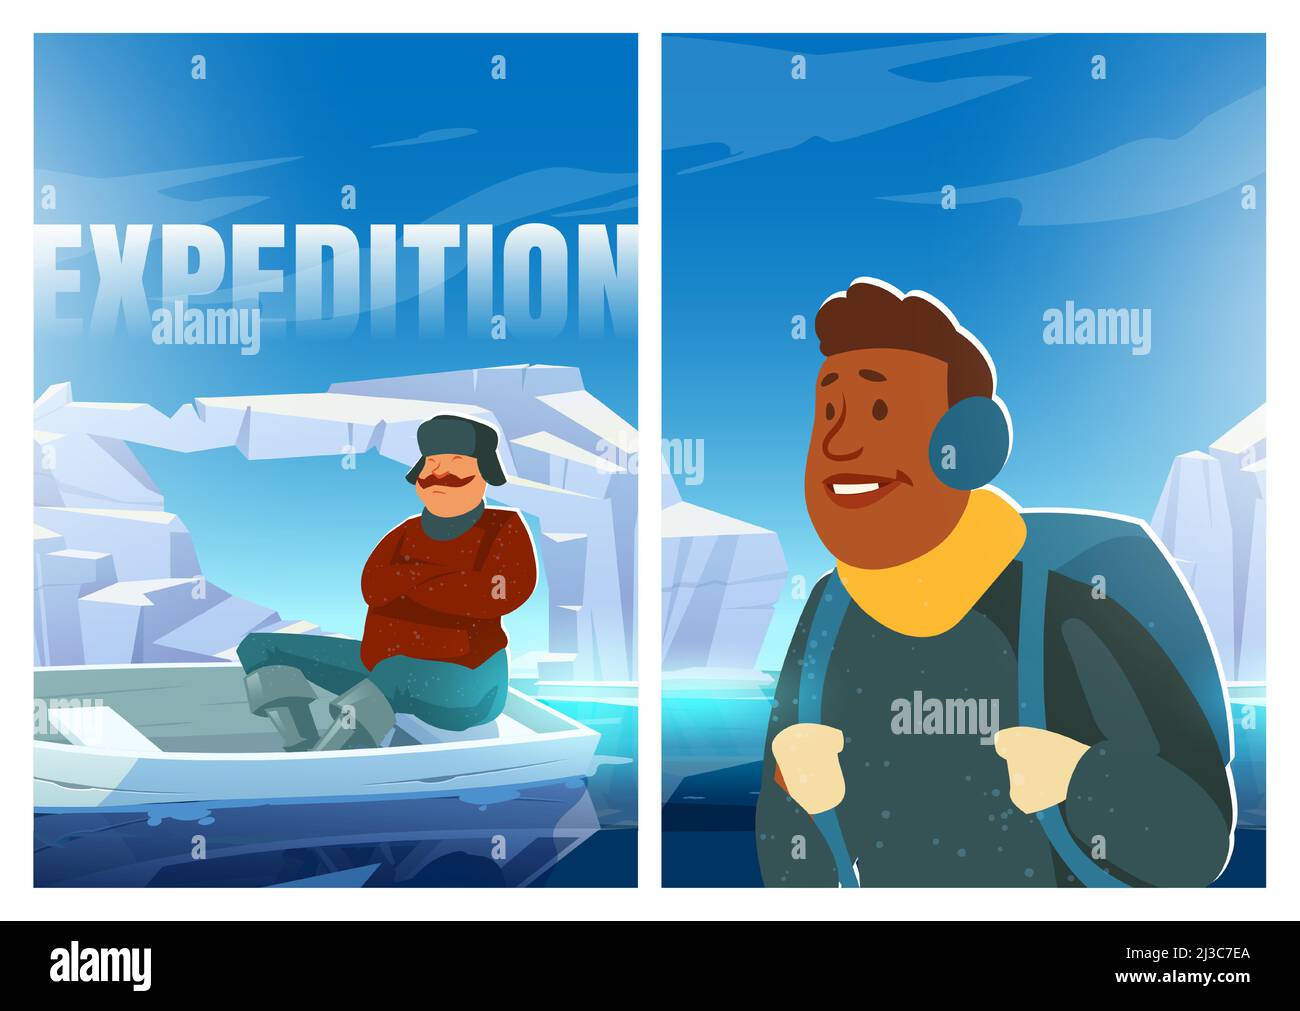 Expeditionsplakat mit Menschen auf Gletscher in der Arktis. Konzept der wissenschaftlichen Forschung auf dem Nordpol oder der Antarktis. Vektor Cartoon Illustration von Männern Witz Stock Vektor